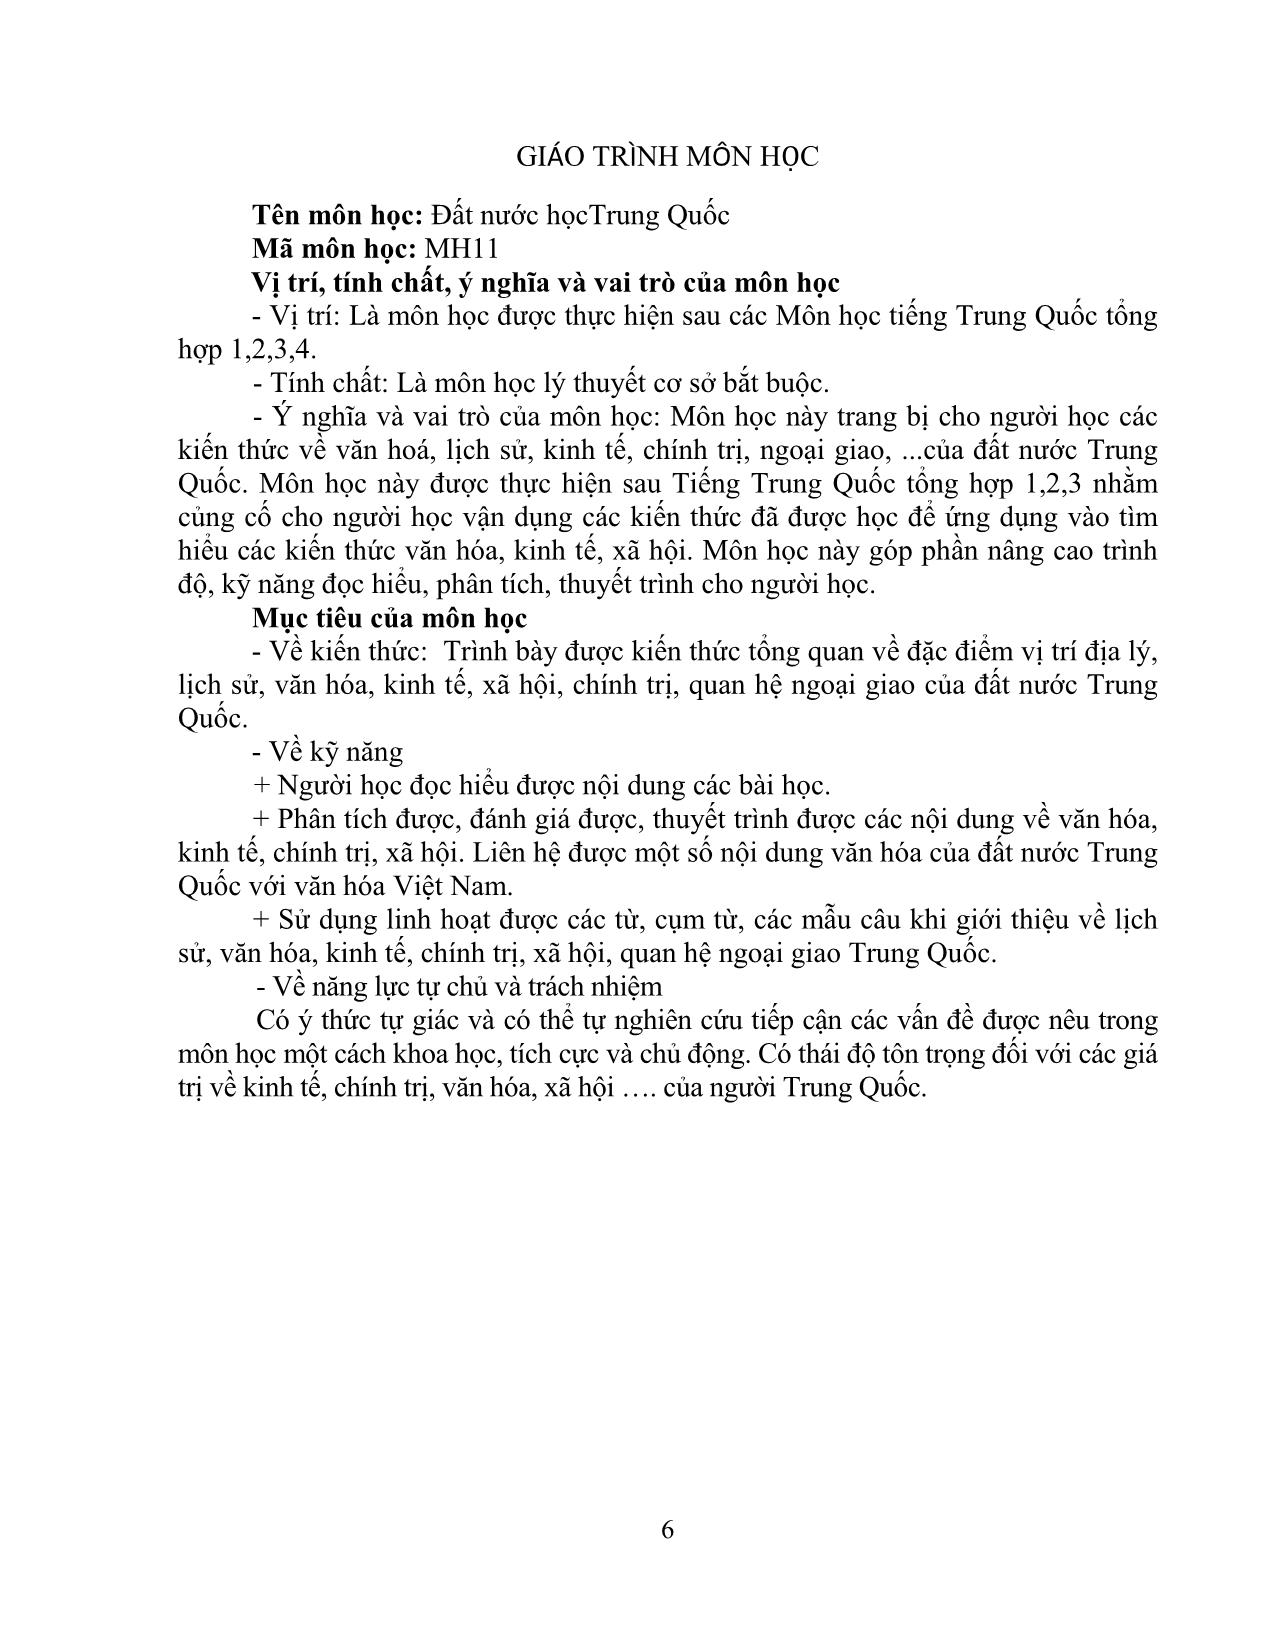 Giáo trình Đất nước học Trung Quốc trang 8